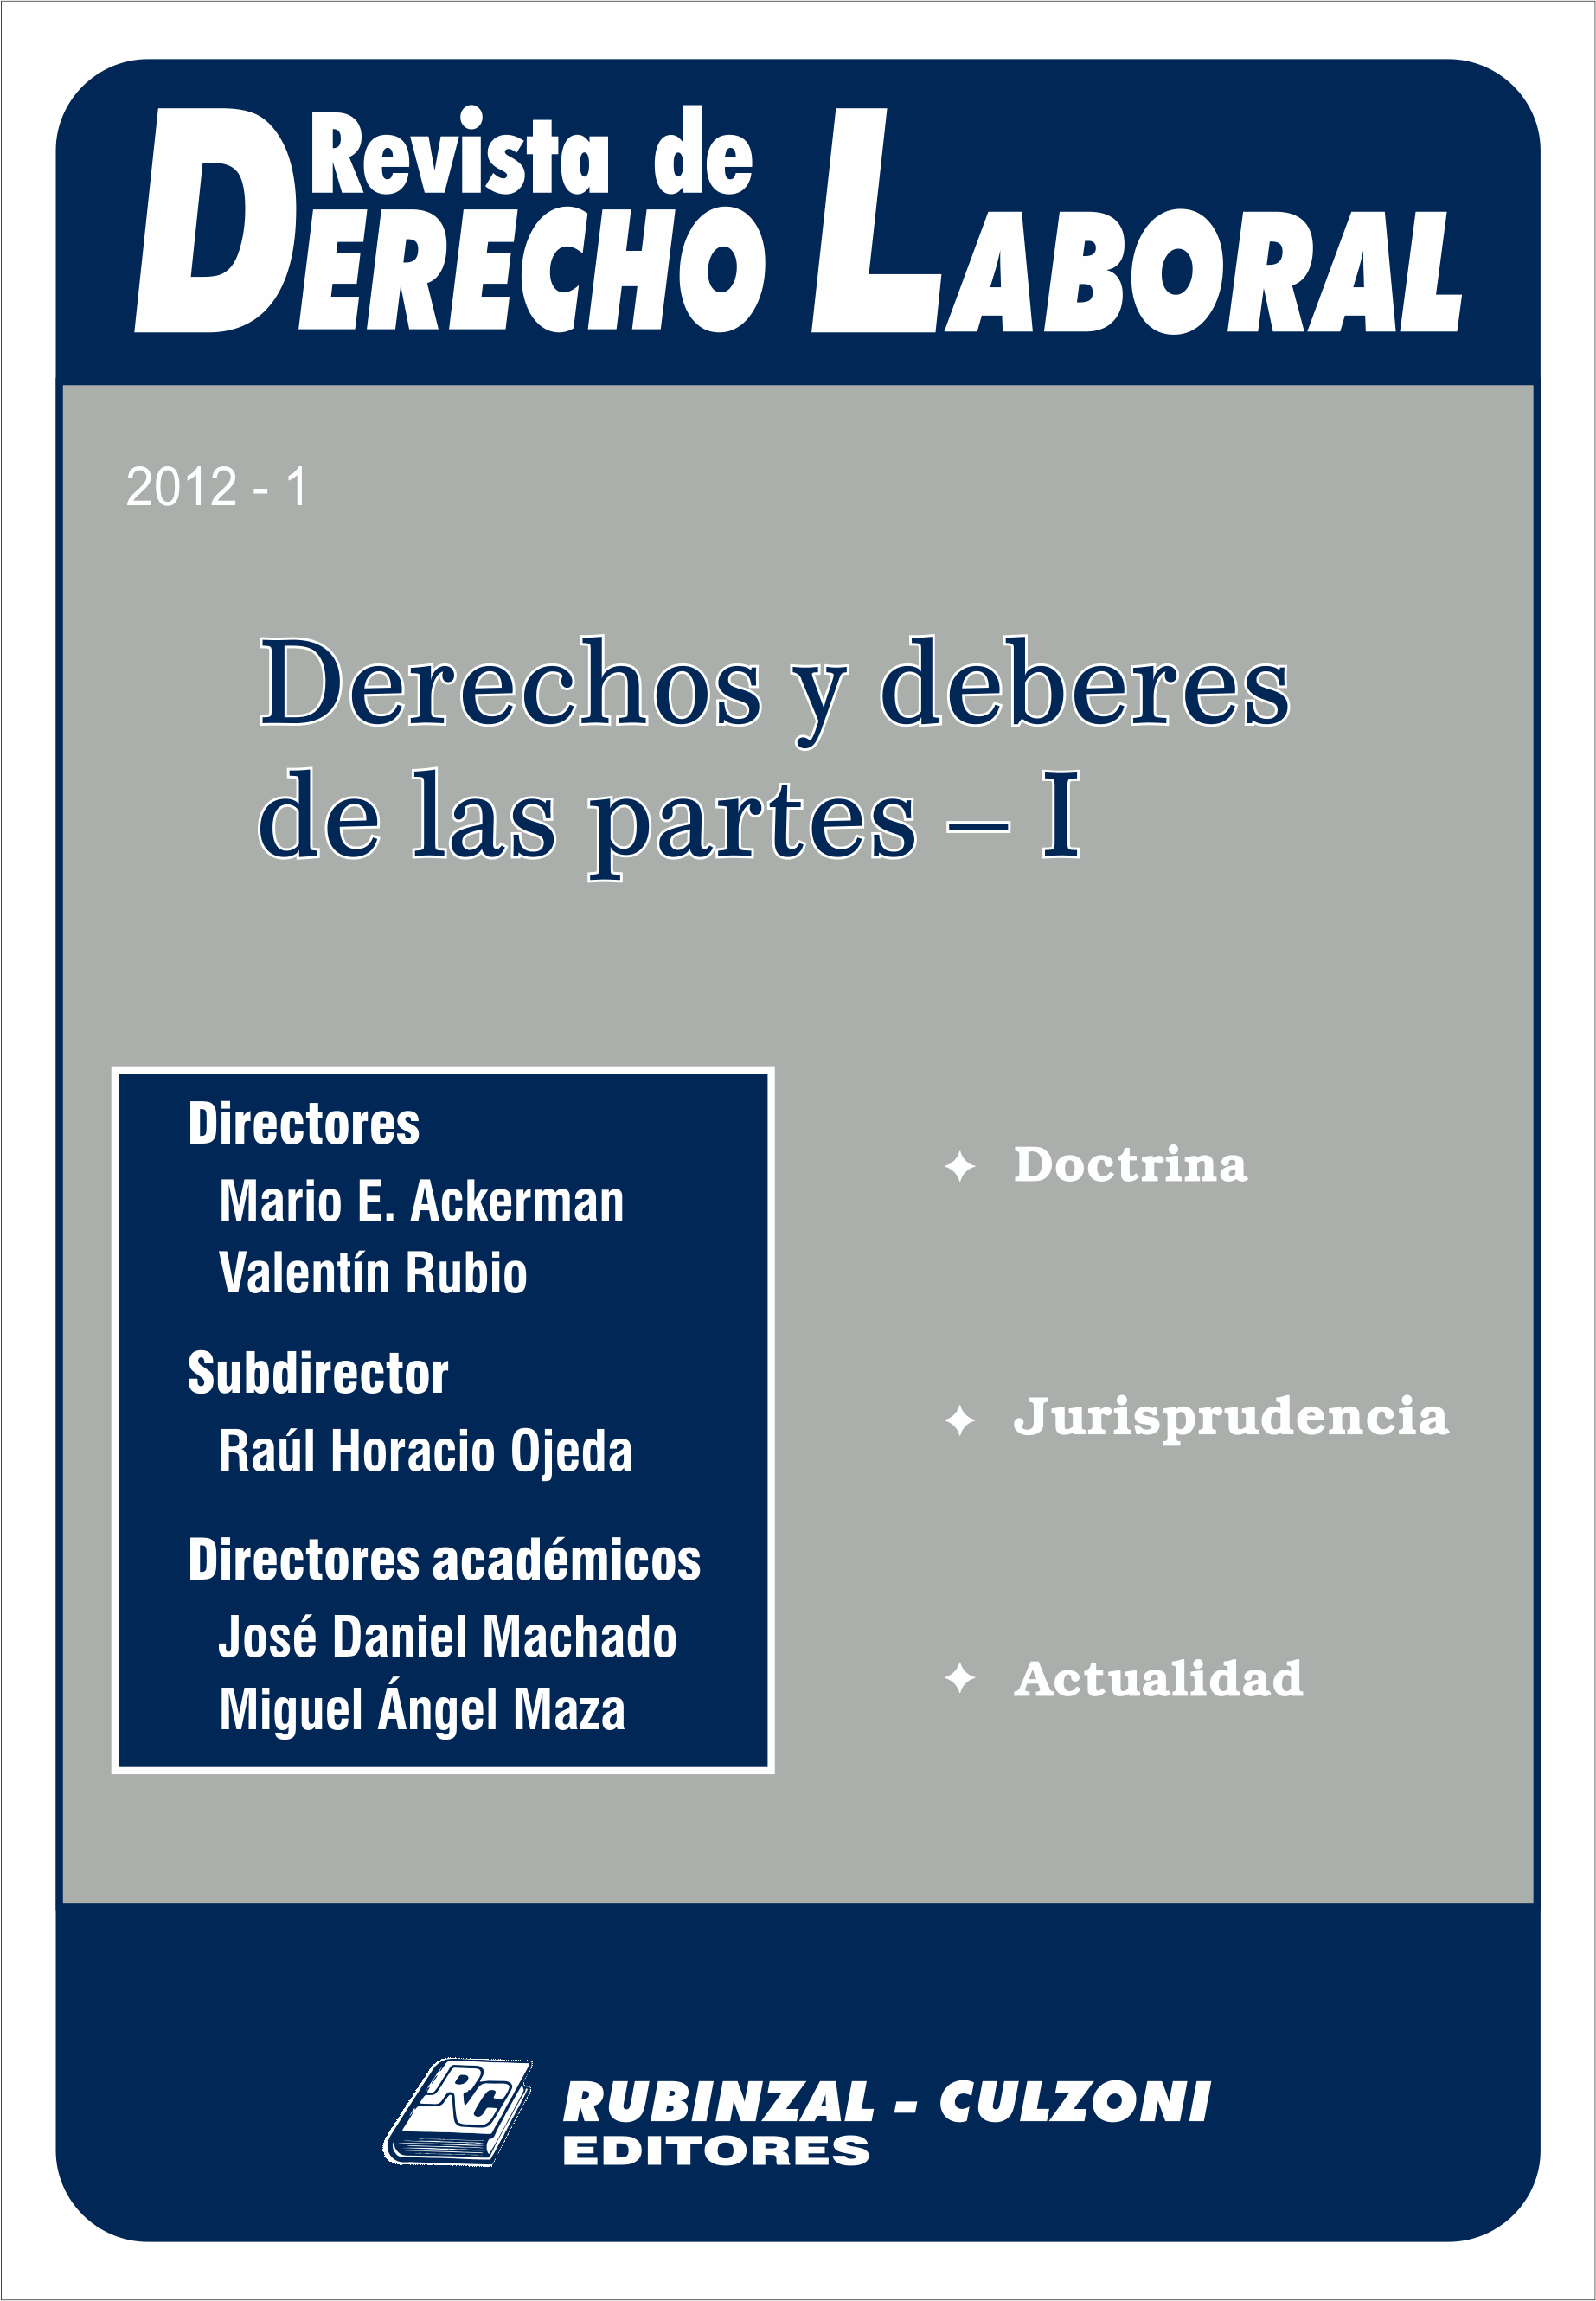 Revista de Derecho Laboral - Derechos y deberes de las partes - I.